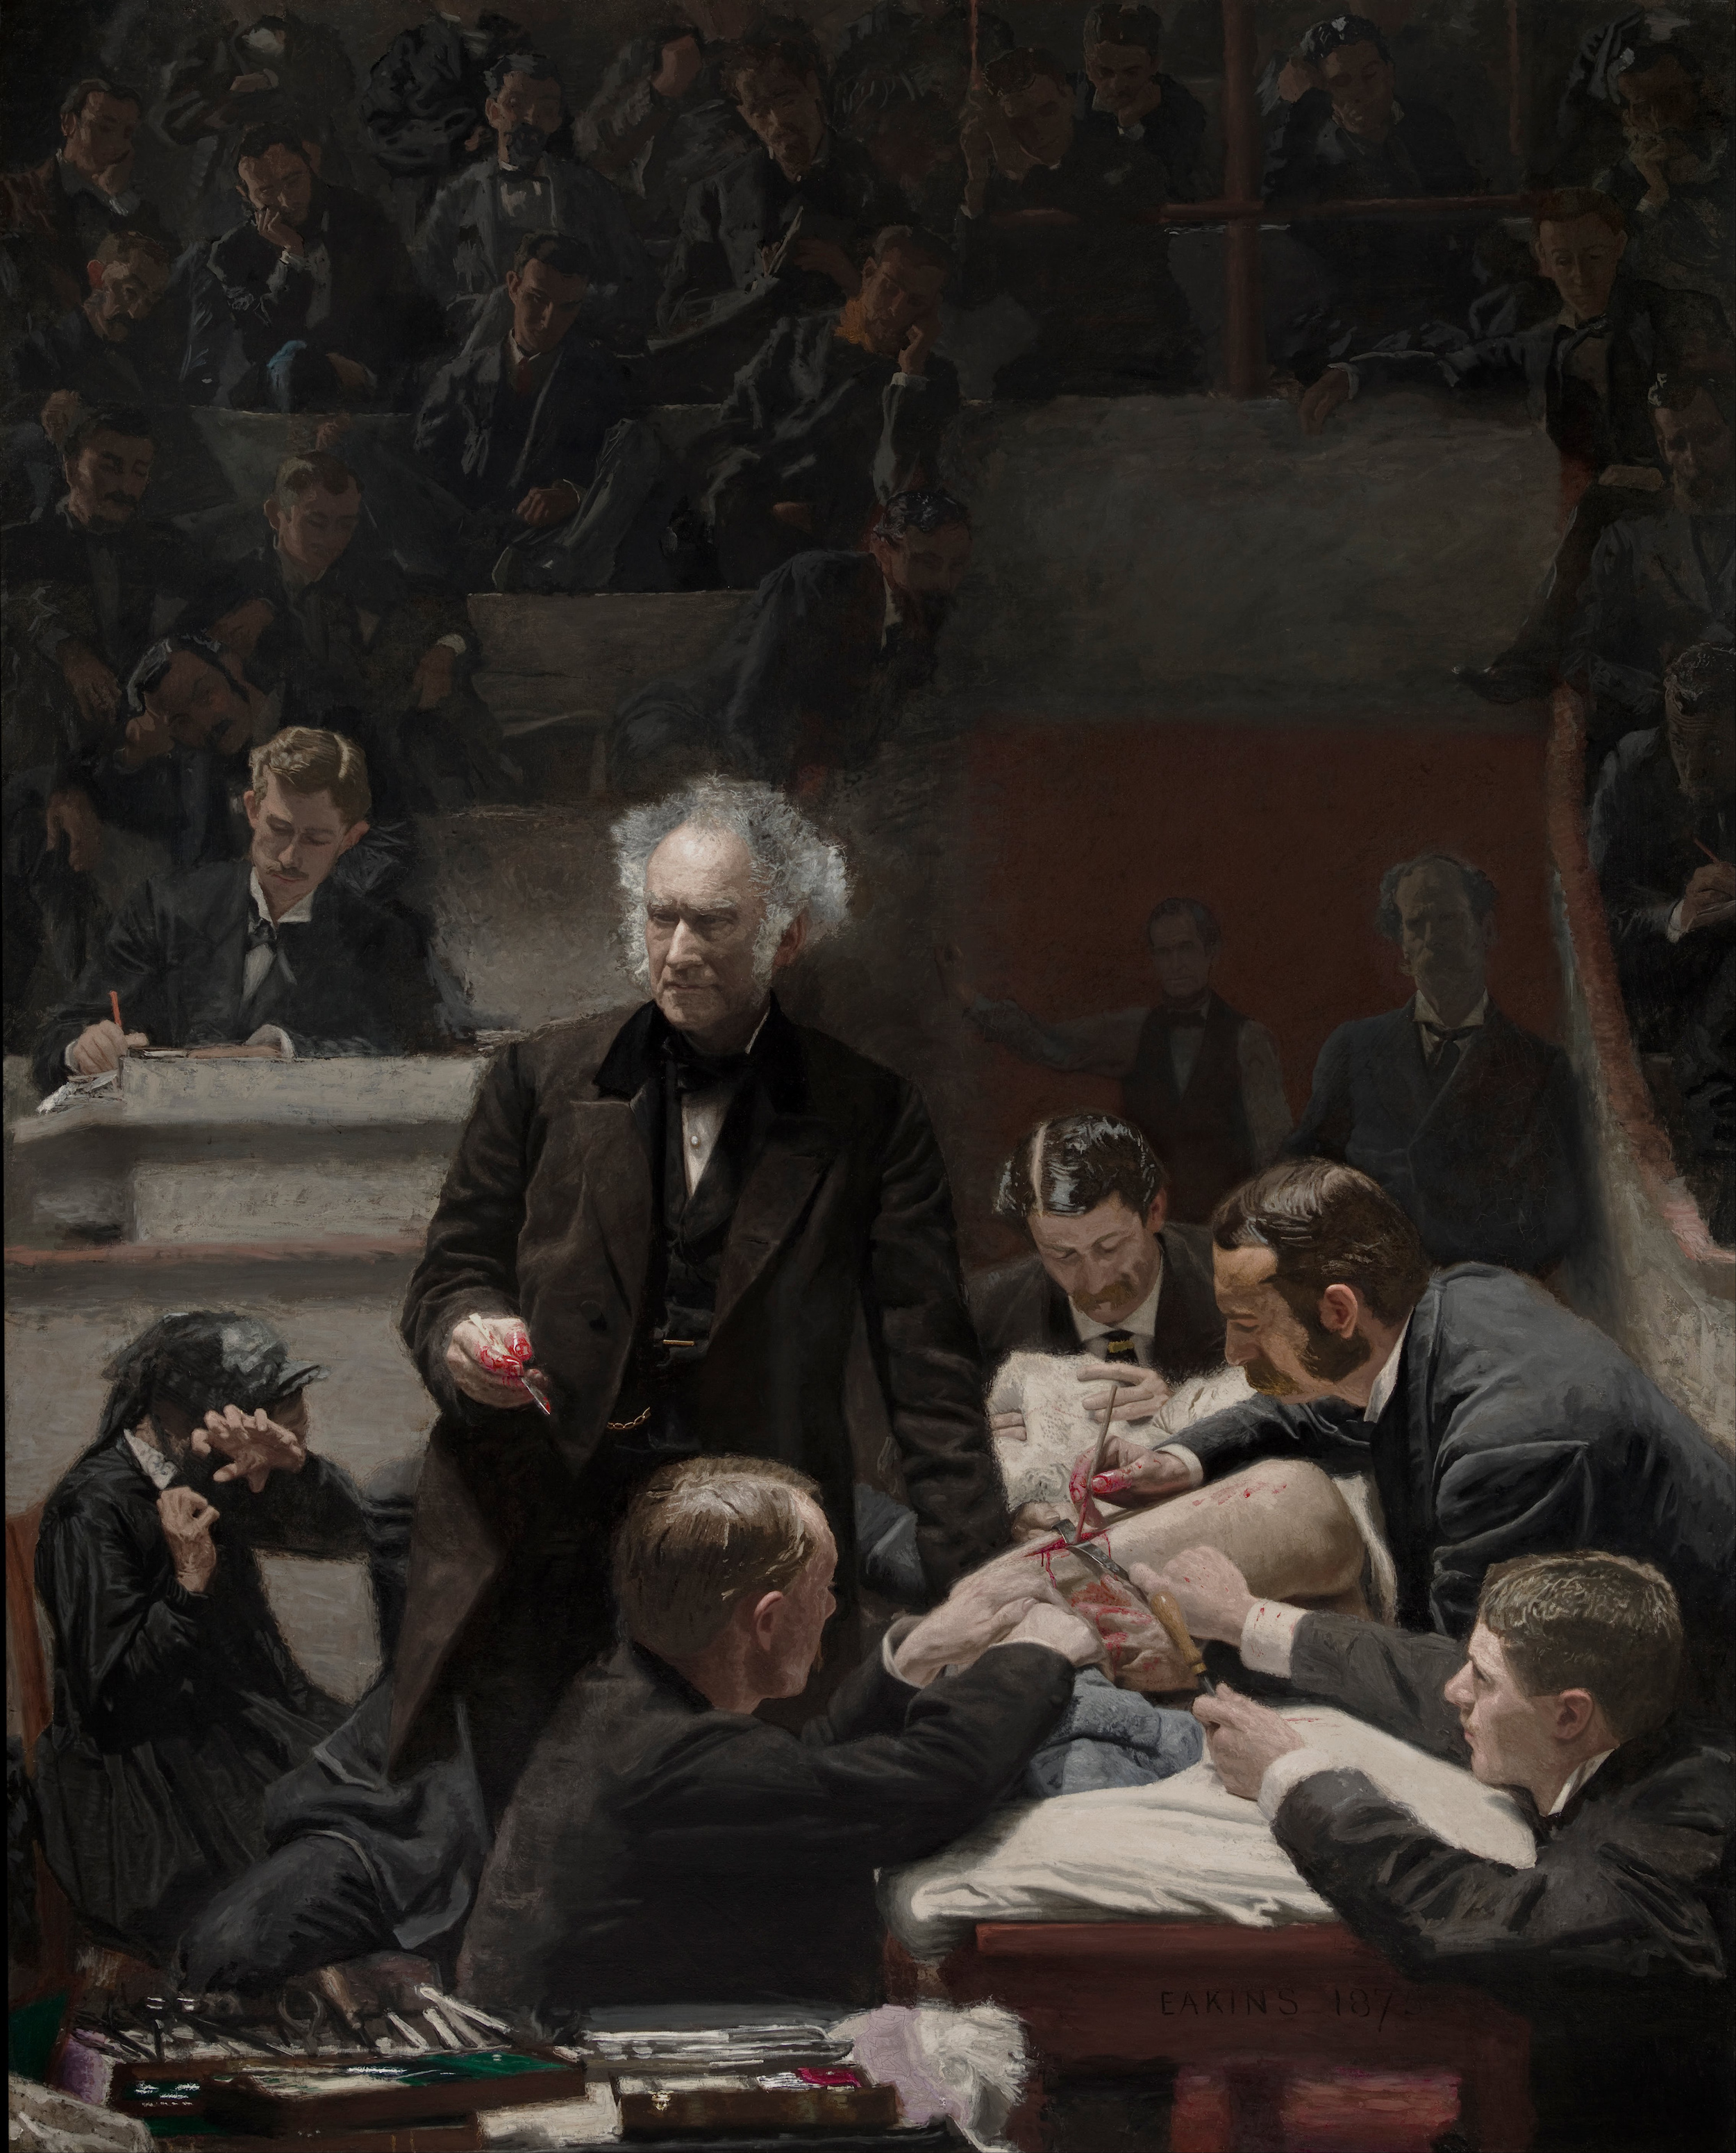 Клиника Гросса by Thomas Eakins - 1872 - 244 x 198 см 